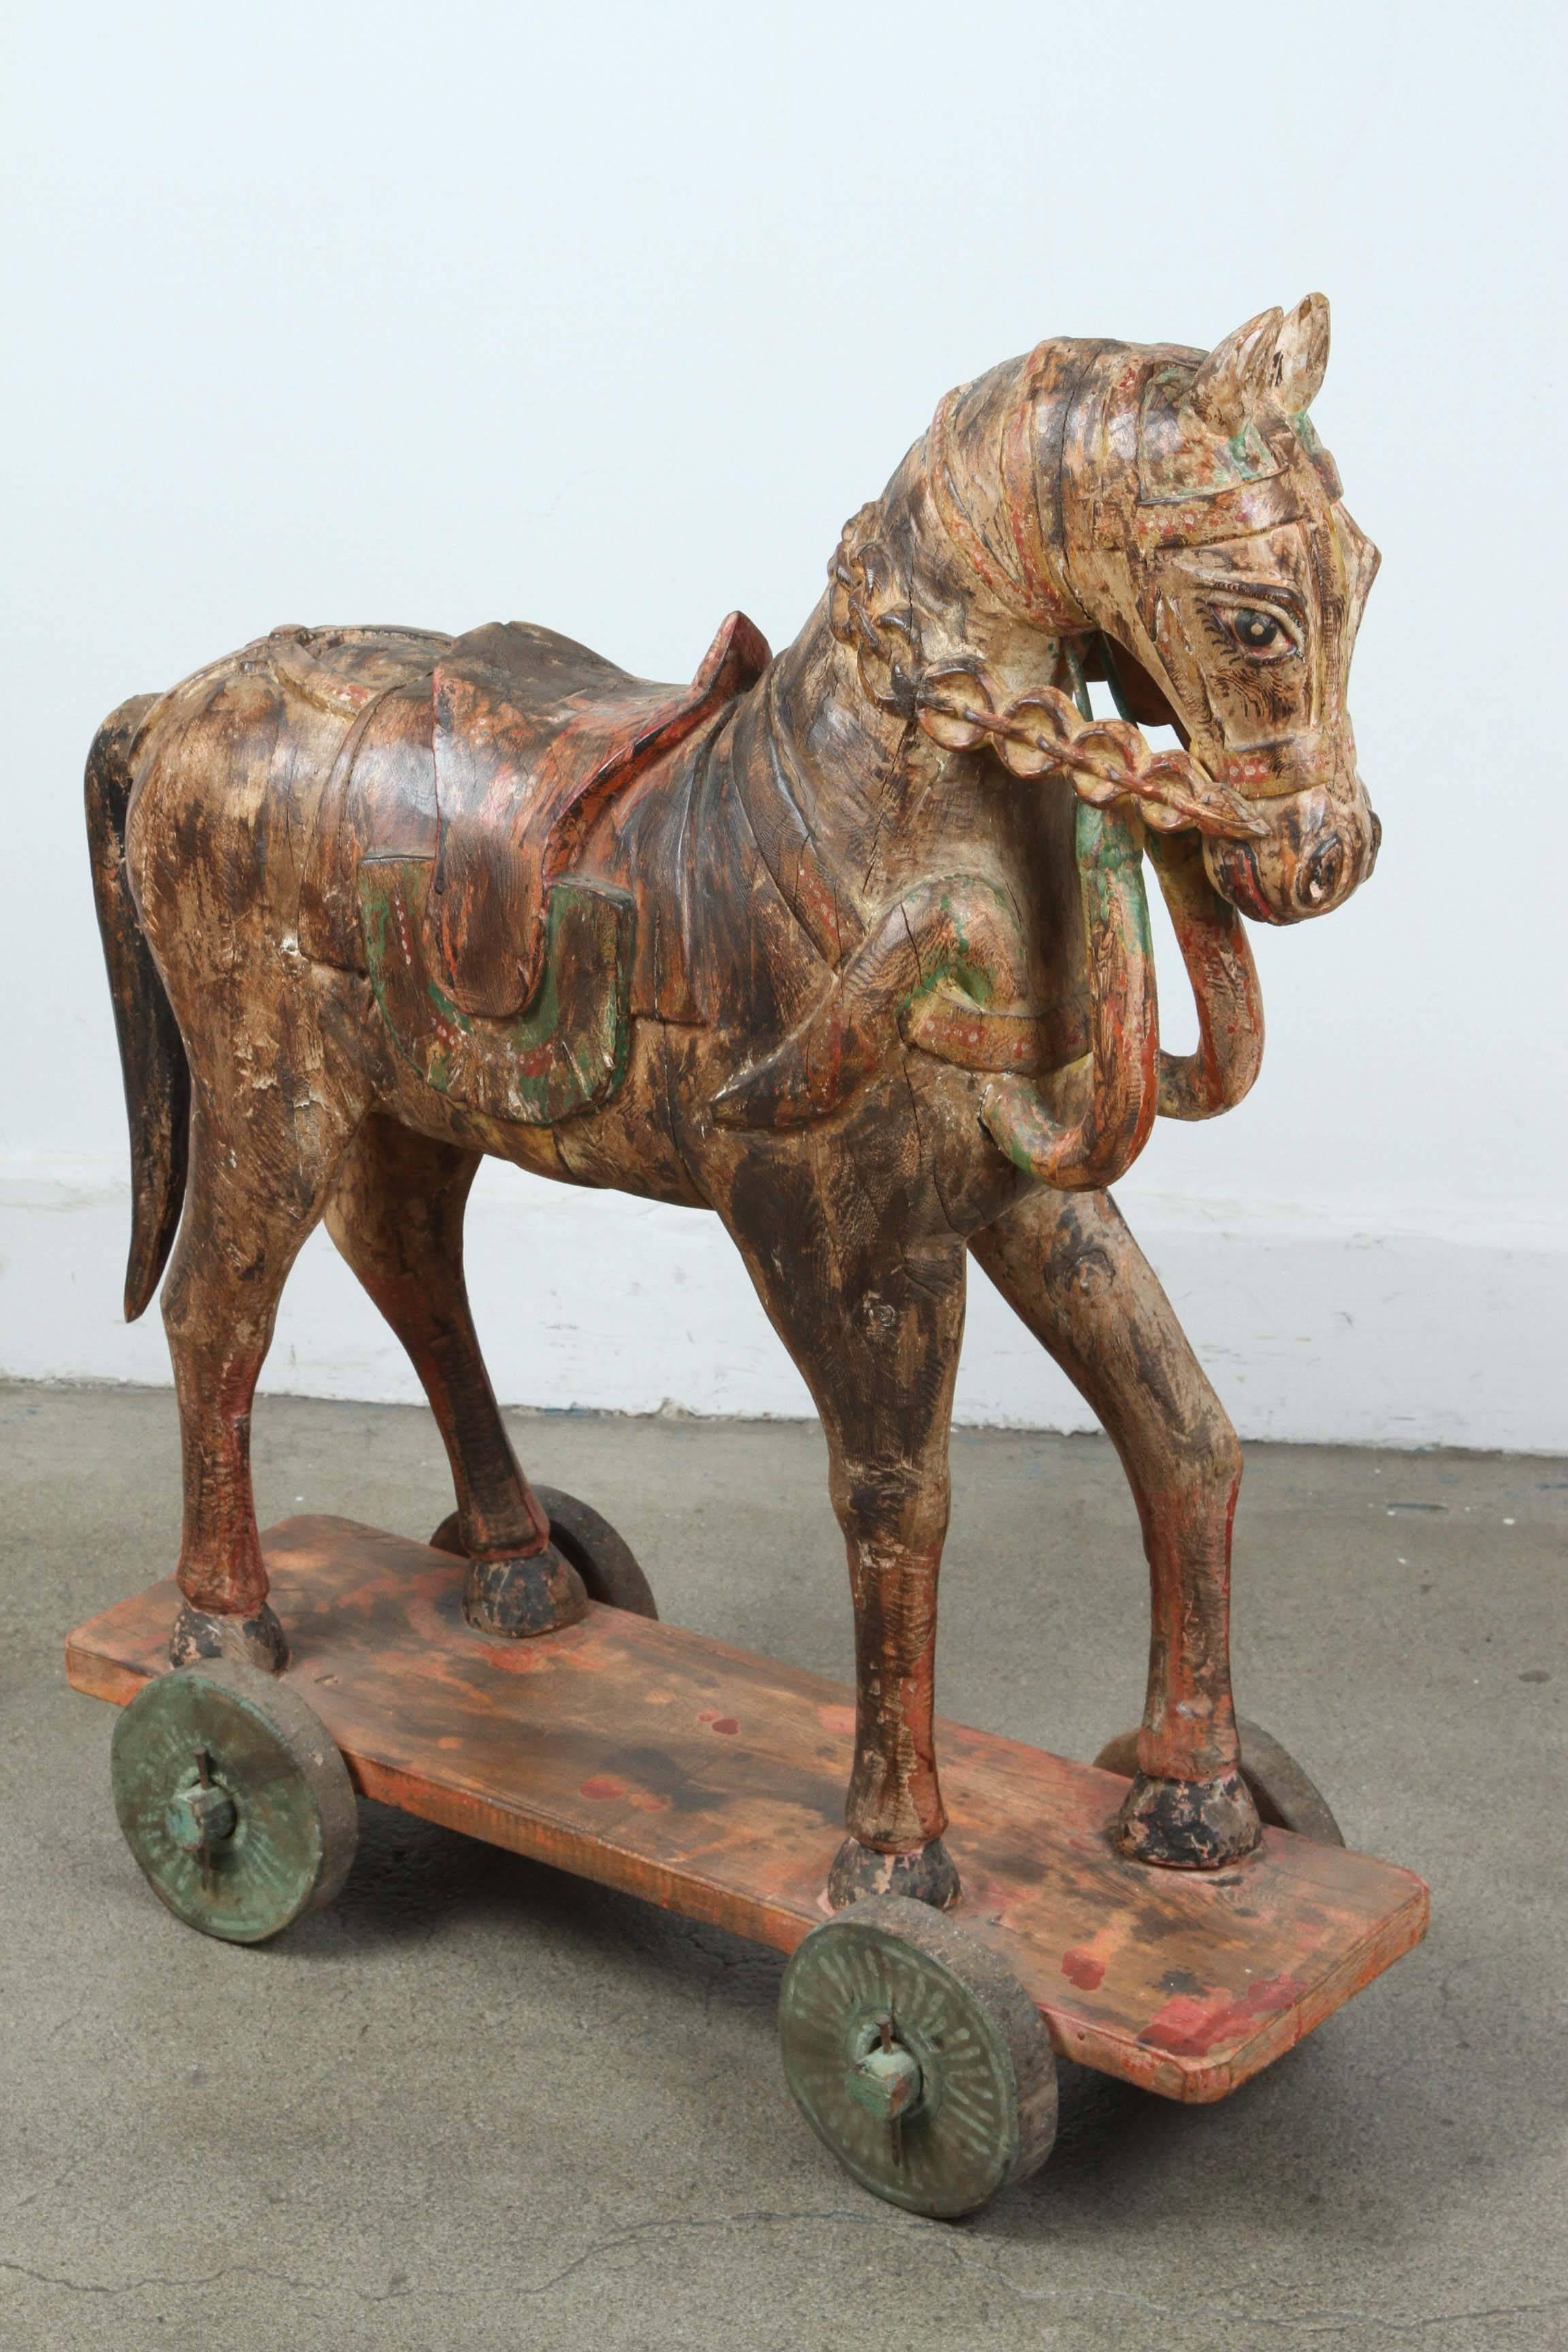 Paire de chevaux de temple indiens en bois surdimensionnés, sculptés à la main au 19e siècle, décorés en polychromie et assis sur une planche à roulettes. 
Grand cheval antique en bois polychrome sculpté d'Asie du Sud-Est.
Modèle ancien en bois